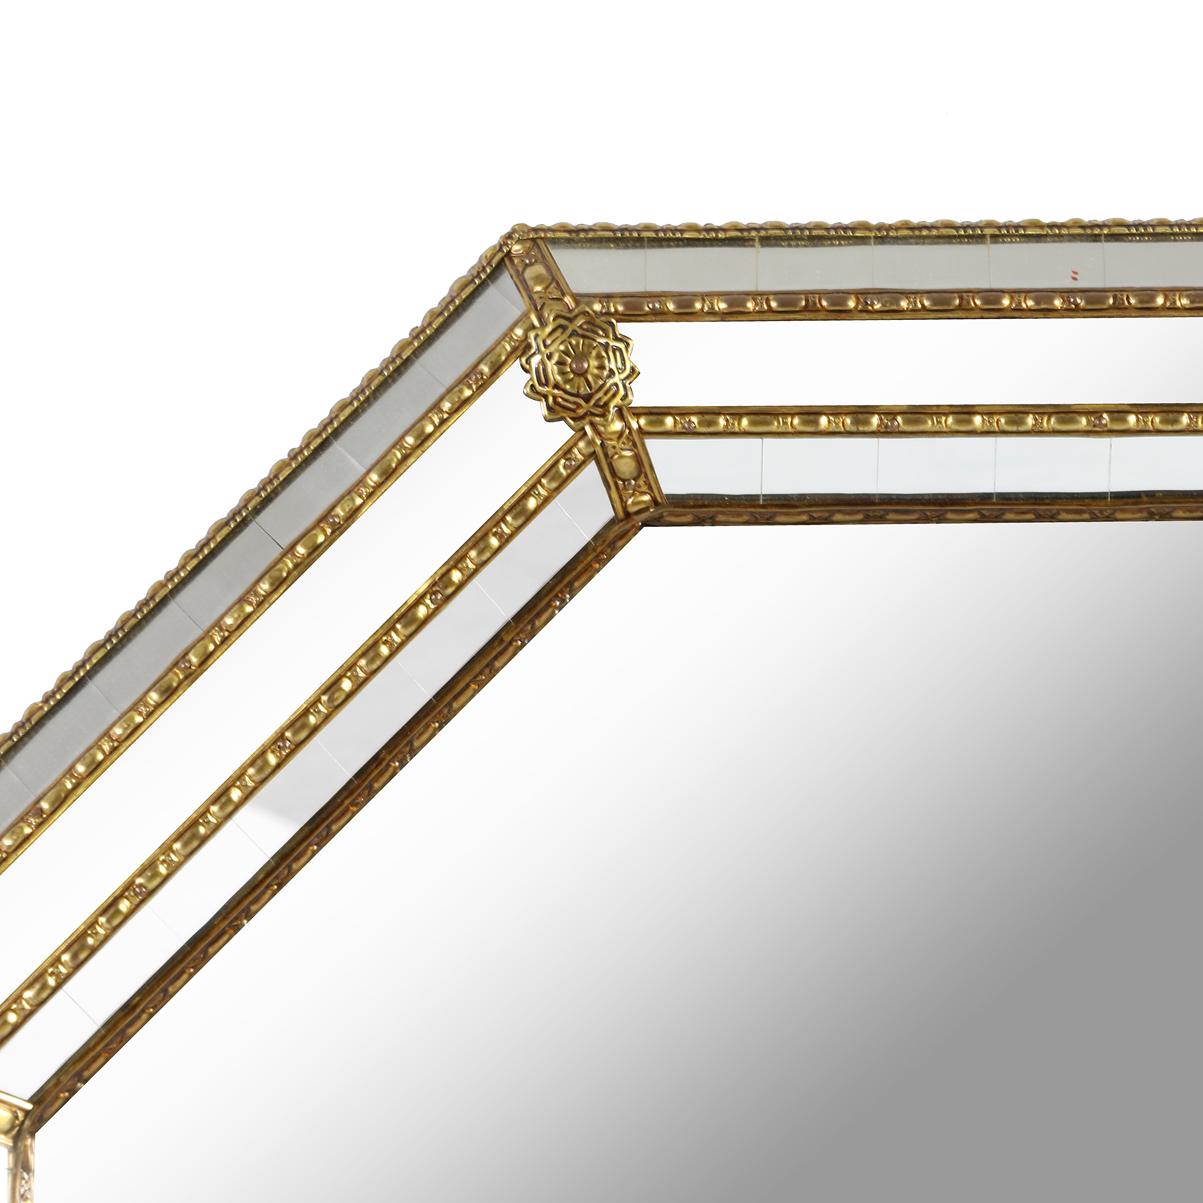 Miroir biseauté octogonal à triple cadre doré avec détails de perles dorées et fleurons aux angles.  Les cadres extérieur et intérieur sont constitués de petites pièces en miroir, tandis que le cadre central est constitué de pièces en miroir massif,